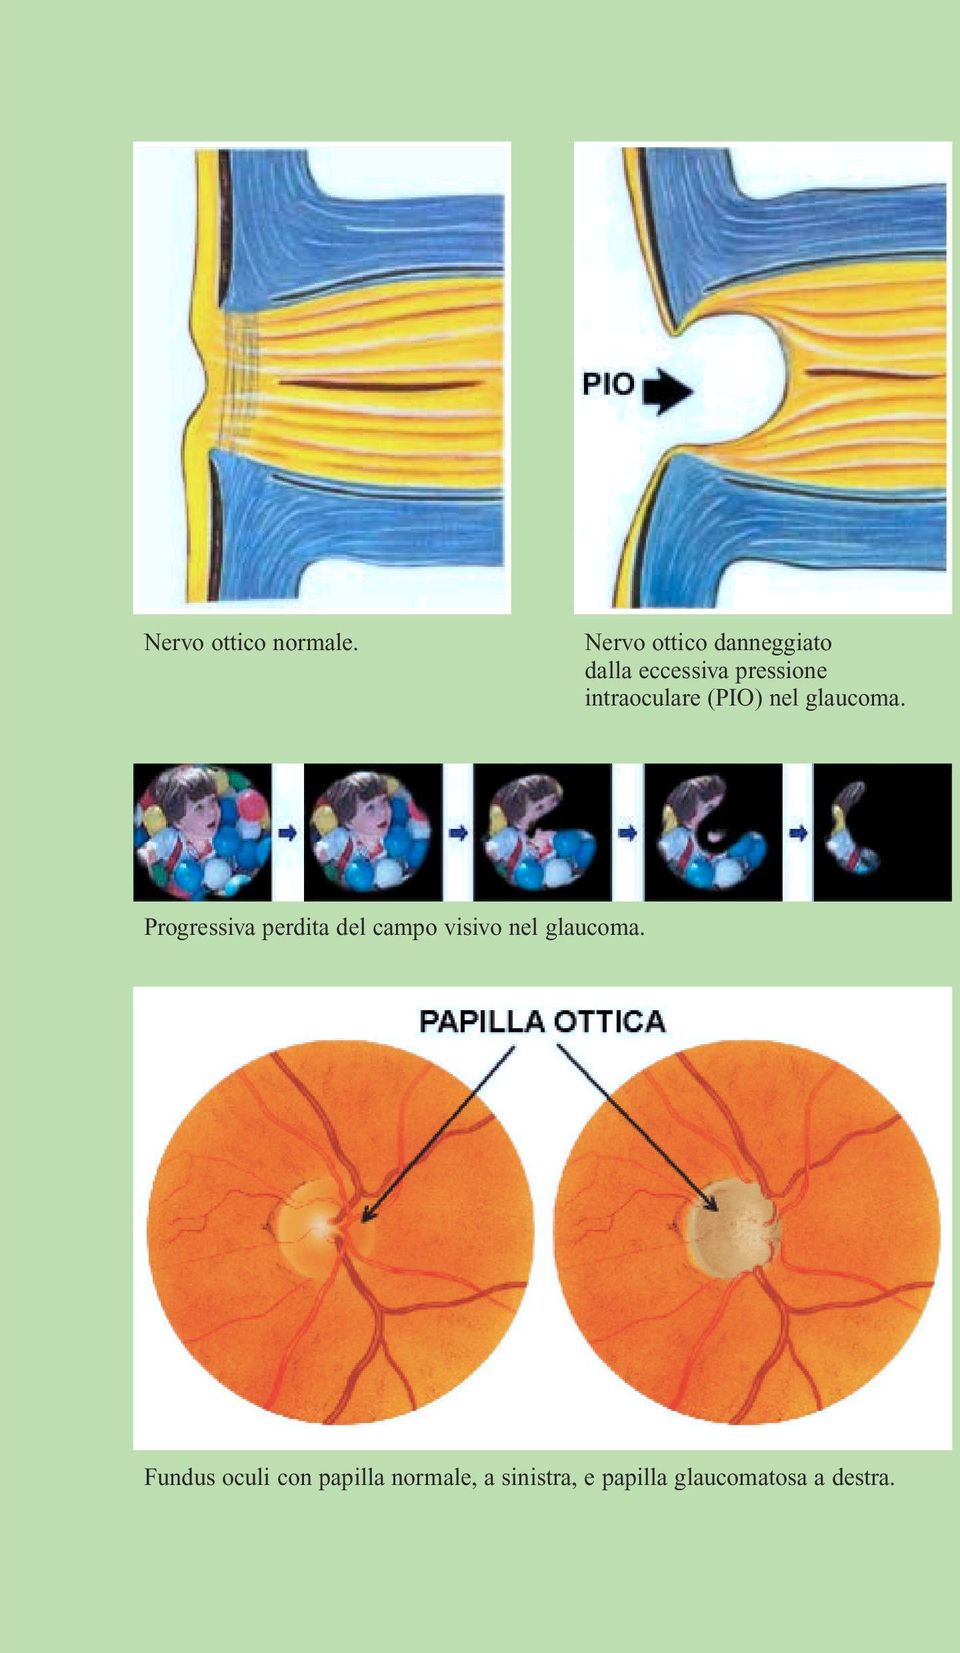 intraoculare (PIO) nel glaucoma.